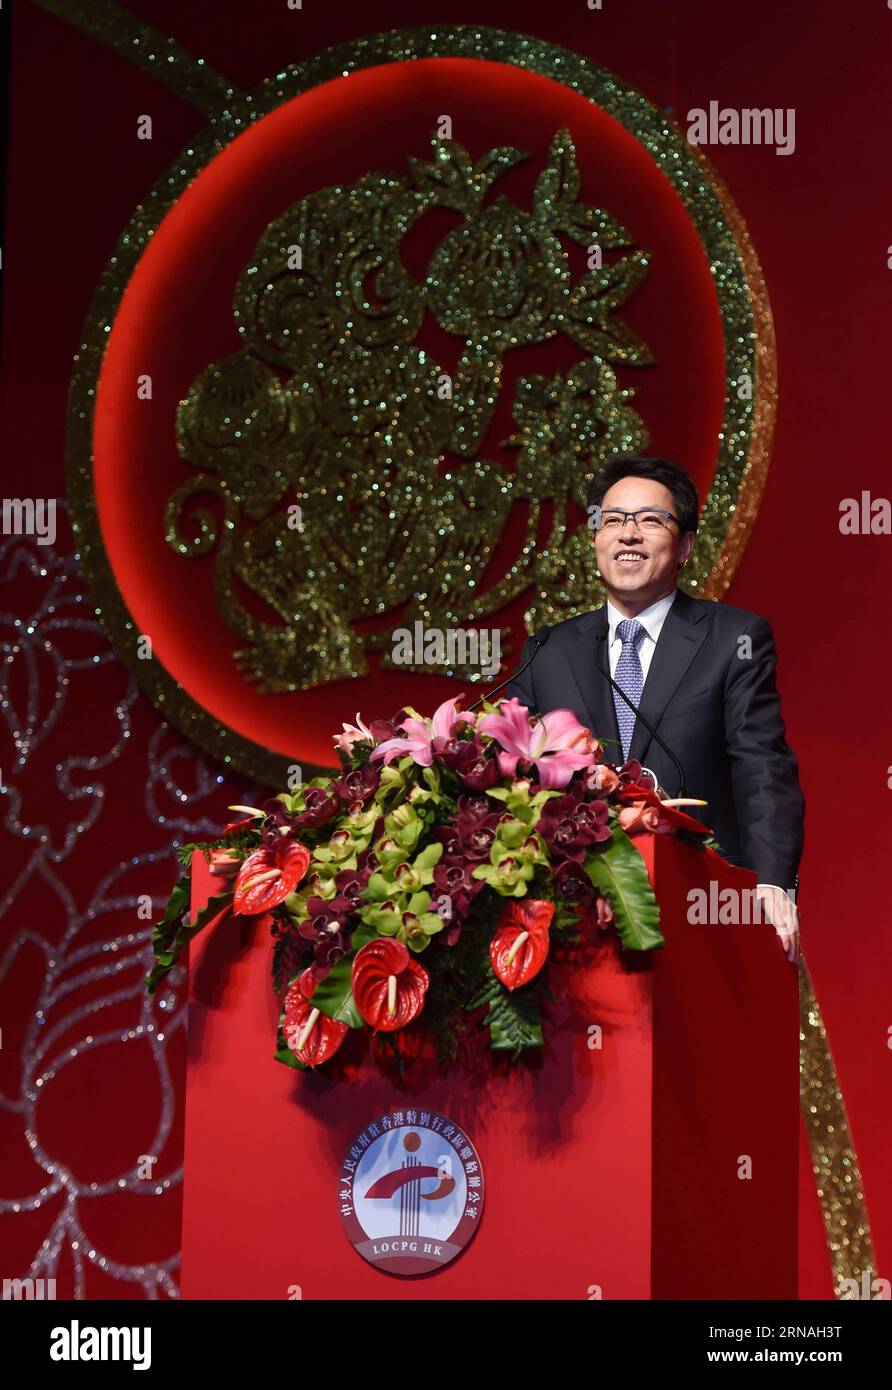 (160126) -- HONG KONG, 26 de enero de 2016 -- Zhang Xiaoming, director de la Oficina de Enlace del Gobierno Popular Central Chino en Hong Kong, se dirige a una reunión del Festival de Primavera celebrada por la oficina de enlace en el Centro de Convenciones y Exposiciones en Hong Kong, al sur de China, el 26 de enero de 2016. )(mcg) CHINA-HONG KONG-OFICINA DE ENCUENTRO (CN) LuixSiuxWai PUBLICATIONxNOTxINxCHN 160126 HONG KONG ENE 26 2016 Zhang Xiao Ming Director de la Oficina de Enlace del Gobierno Central de Celebridades Chinas en Hong Kong se dirige a un héroe de reunión del Festival de Primavera por la Oficina de Enlace en la Convención Foto de stock